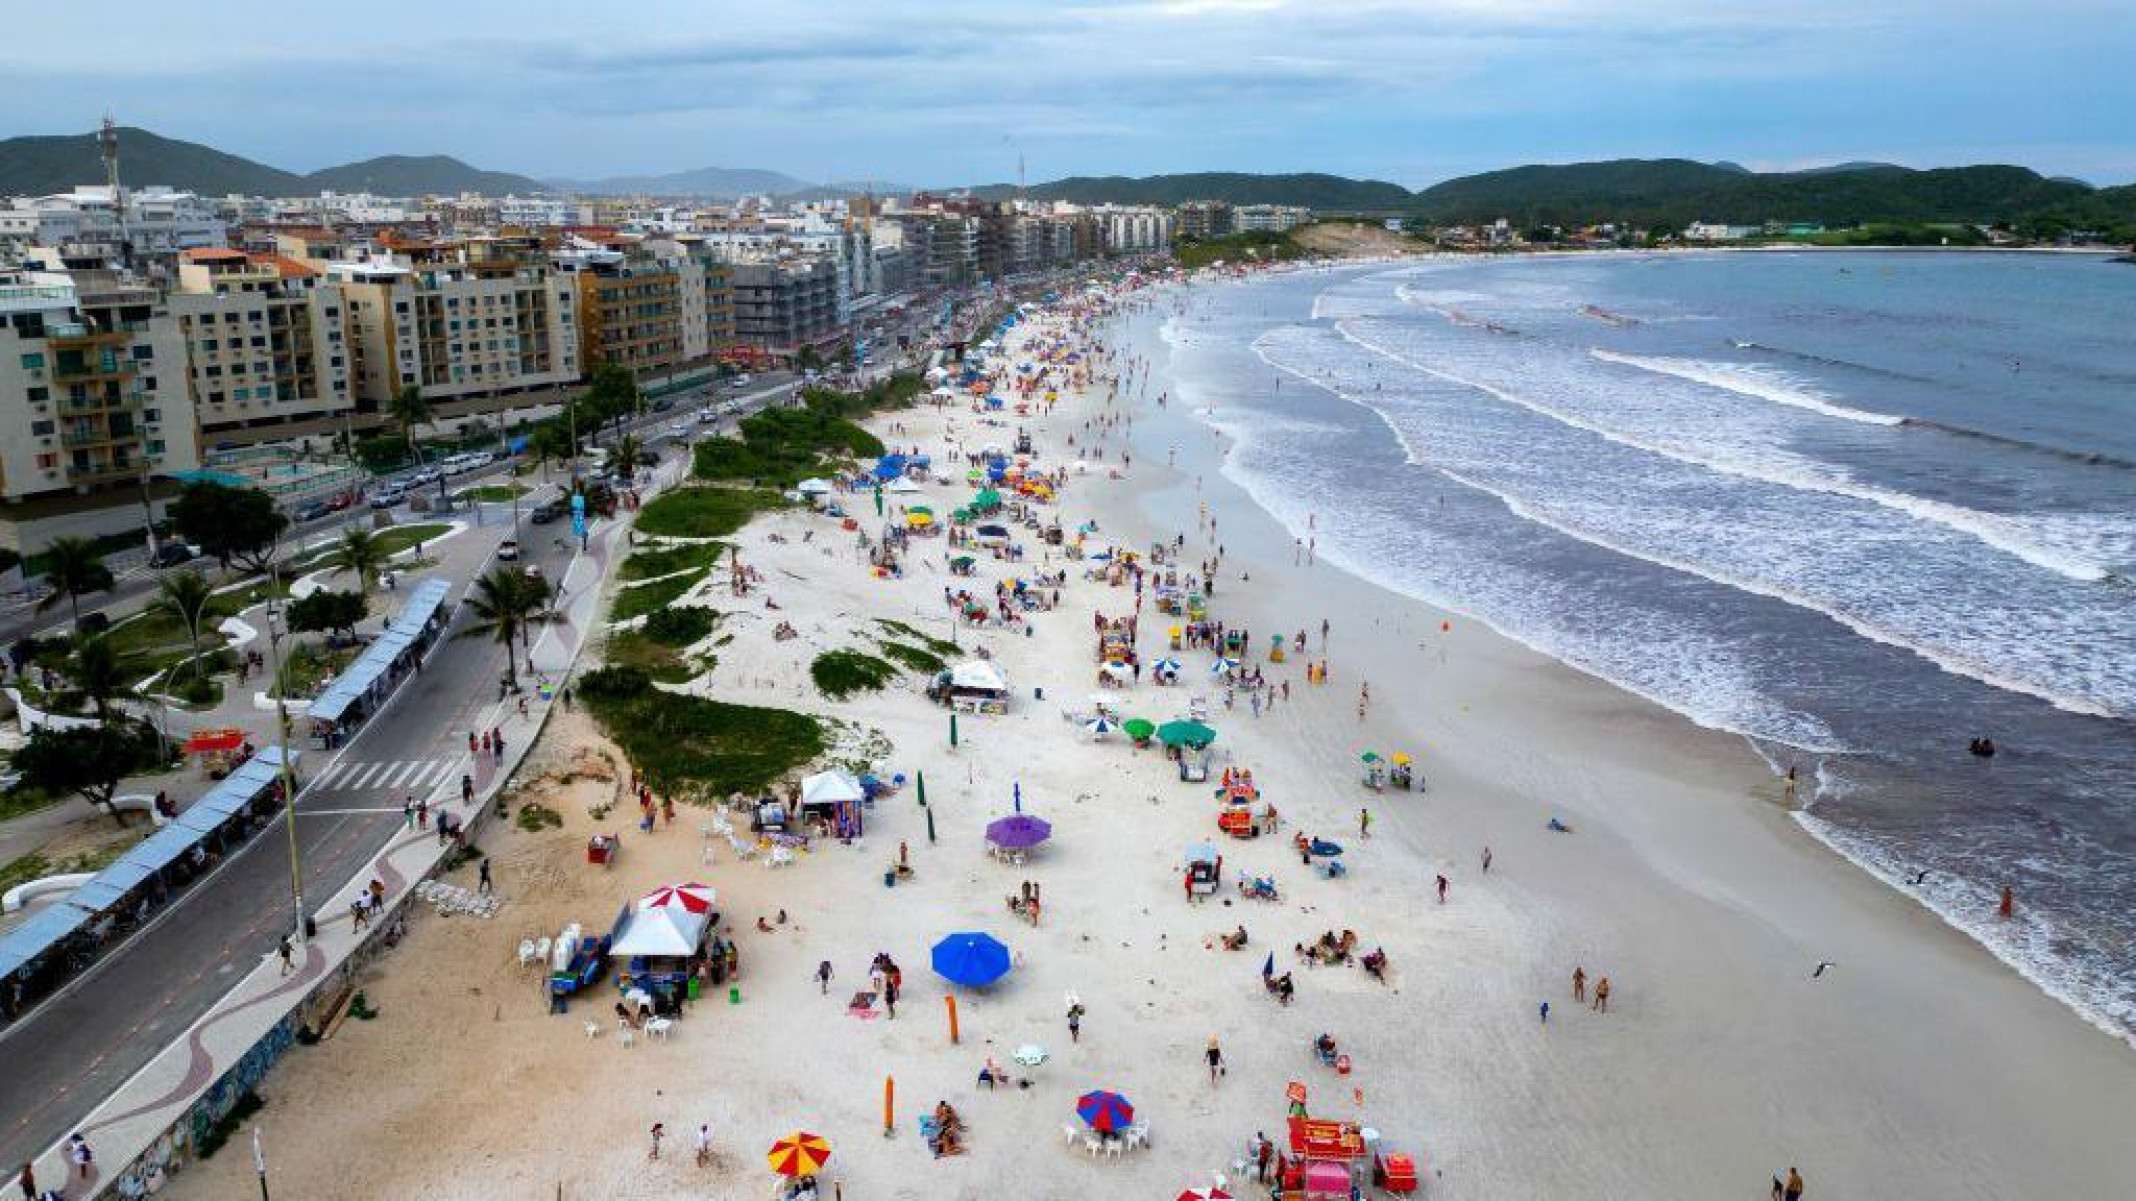 Privatizar as praias? O que está em jogo na PEC criticada por abrir portas para 'privatização de praias' no Brasil